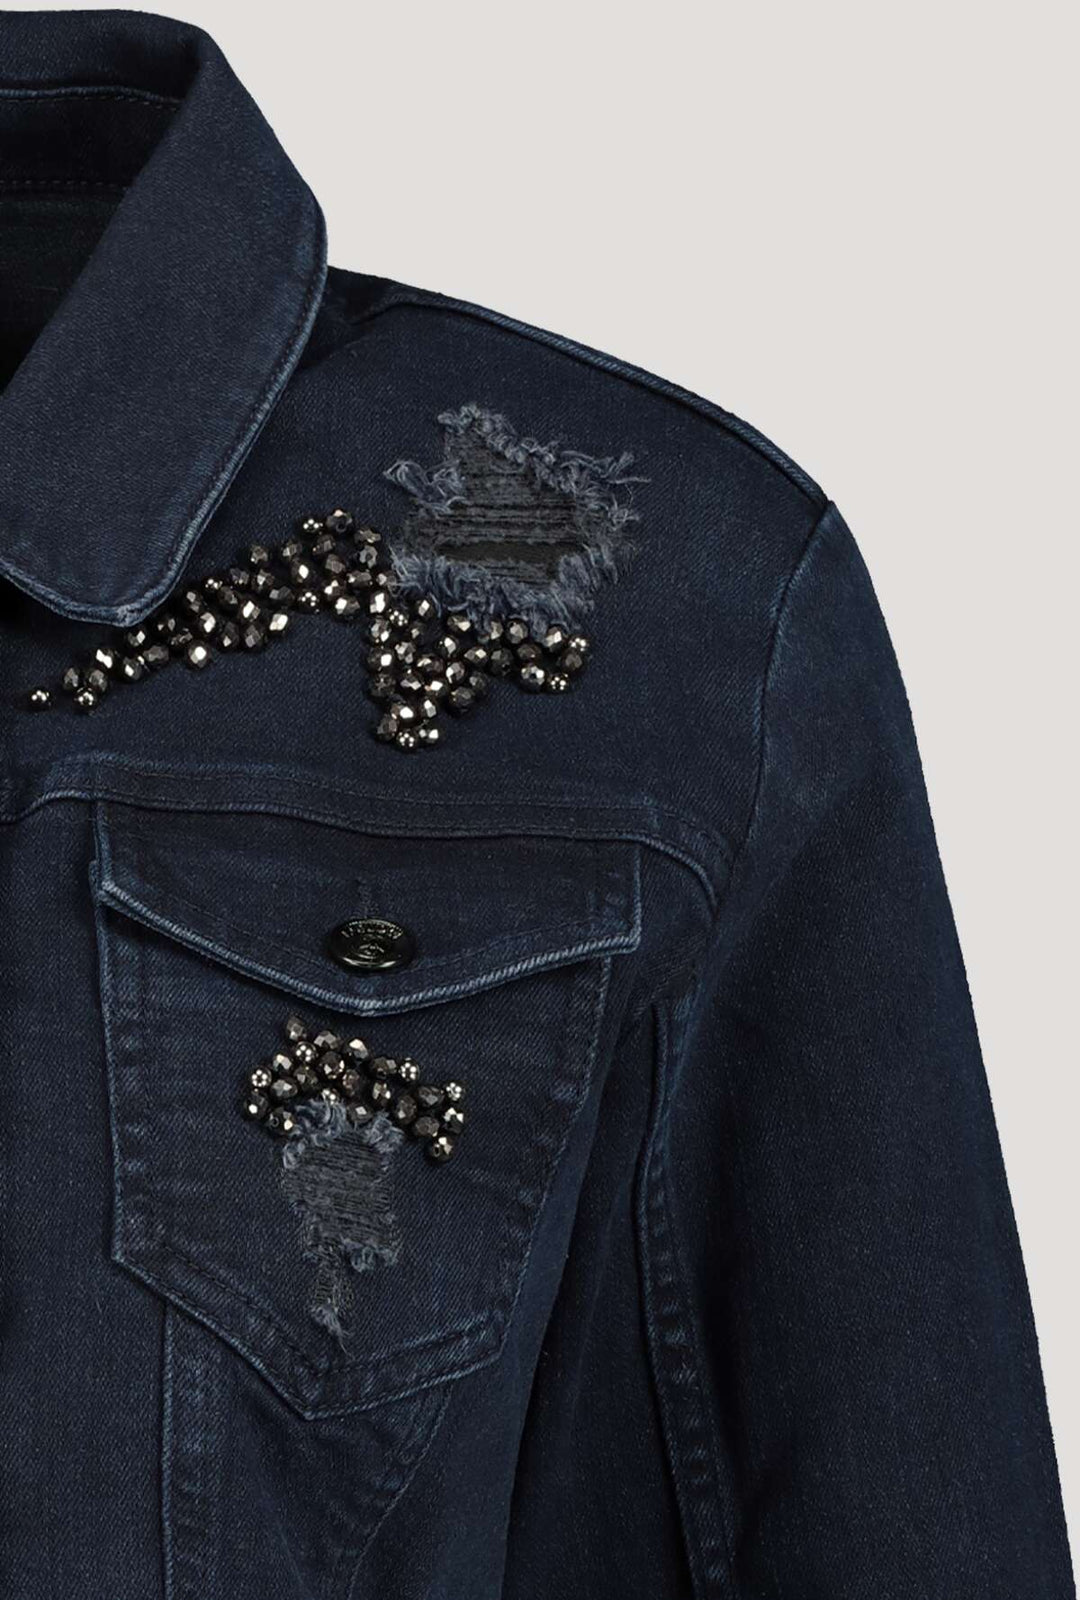 Monari 406503 Dark Denim Jacket With Rhinestones Detail | Dotique